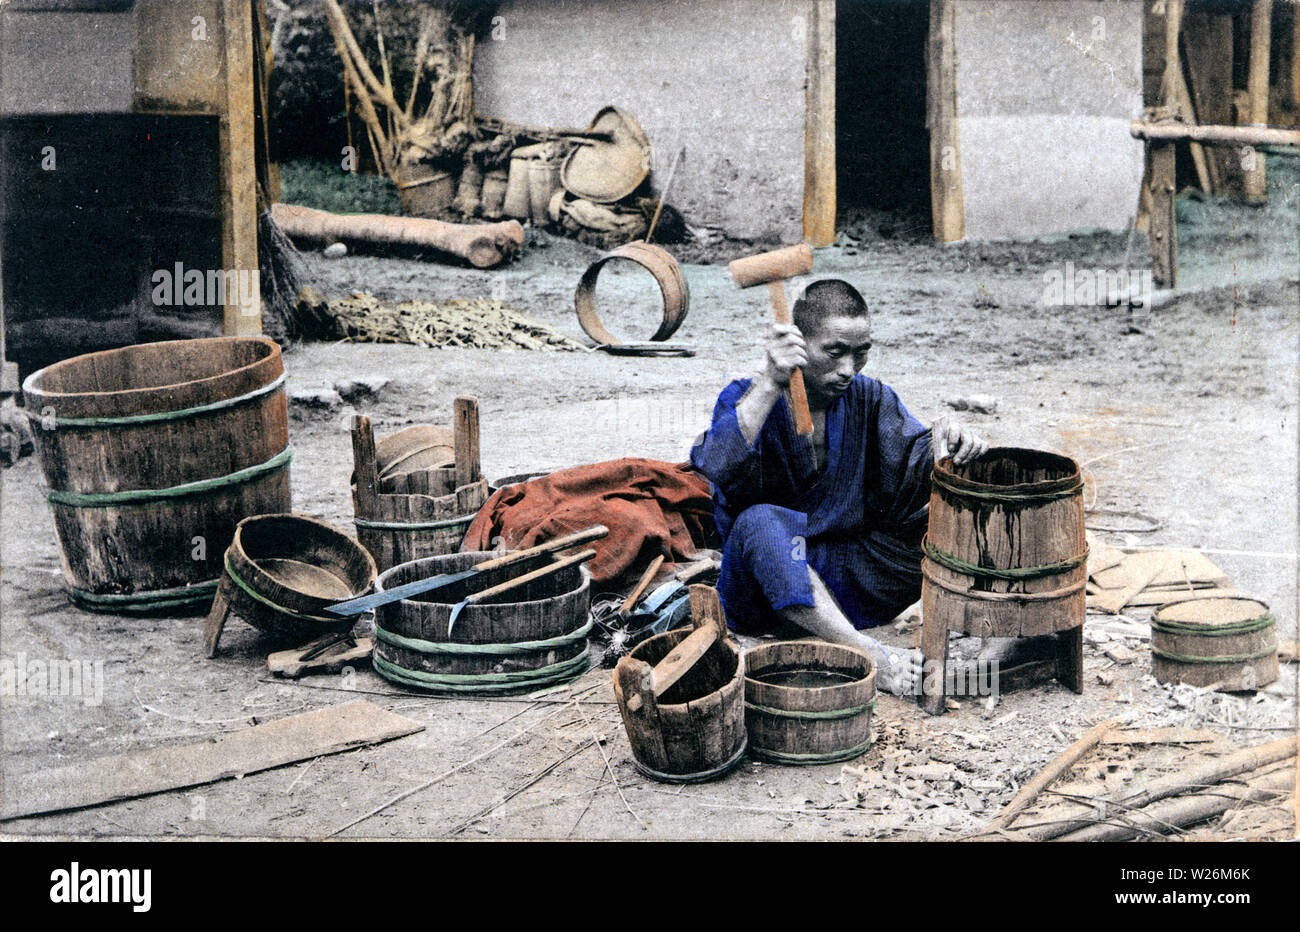 [1910s Japan - Japanische Cooper] - ein Cooper eine Oke (hölzerne Schaufel). 20. jahrhundert alte Ansichtskarte. Stockfoto